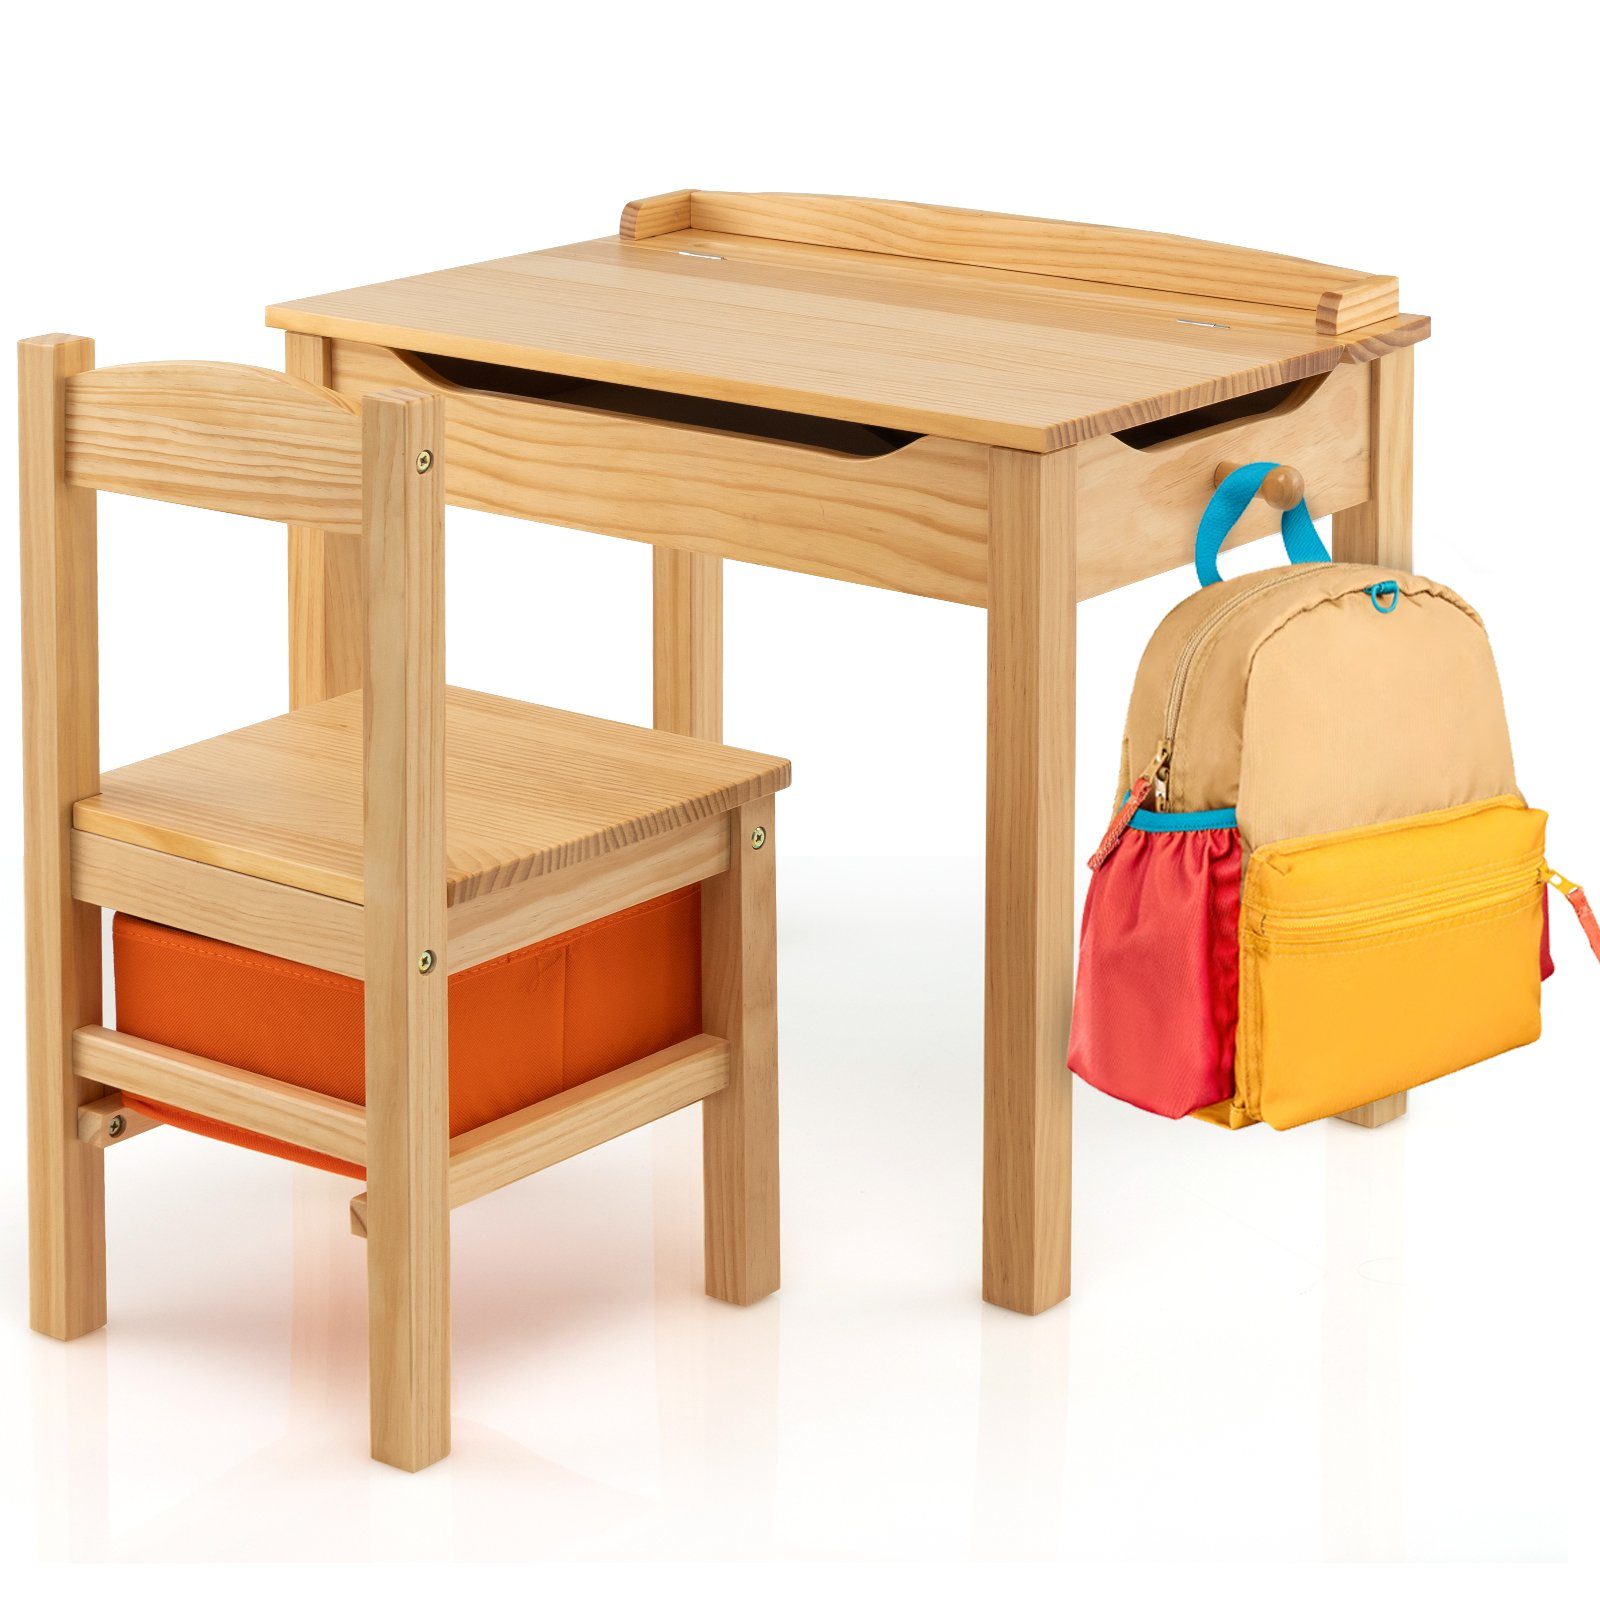 COSTWAY Kindersitzgruppe Kindertisch mit Stuhl, aus Holz, mit Stauraum natur